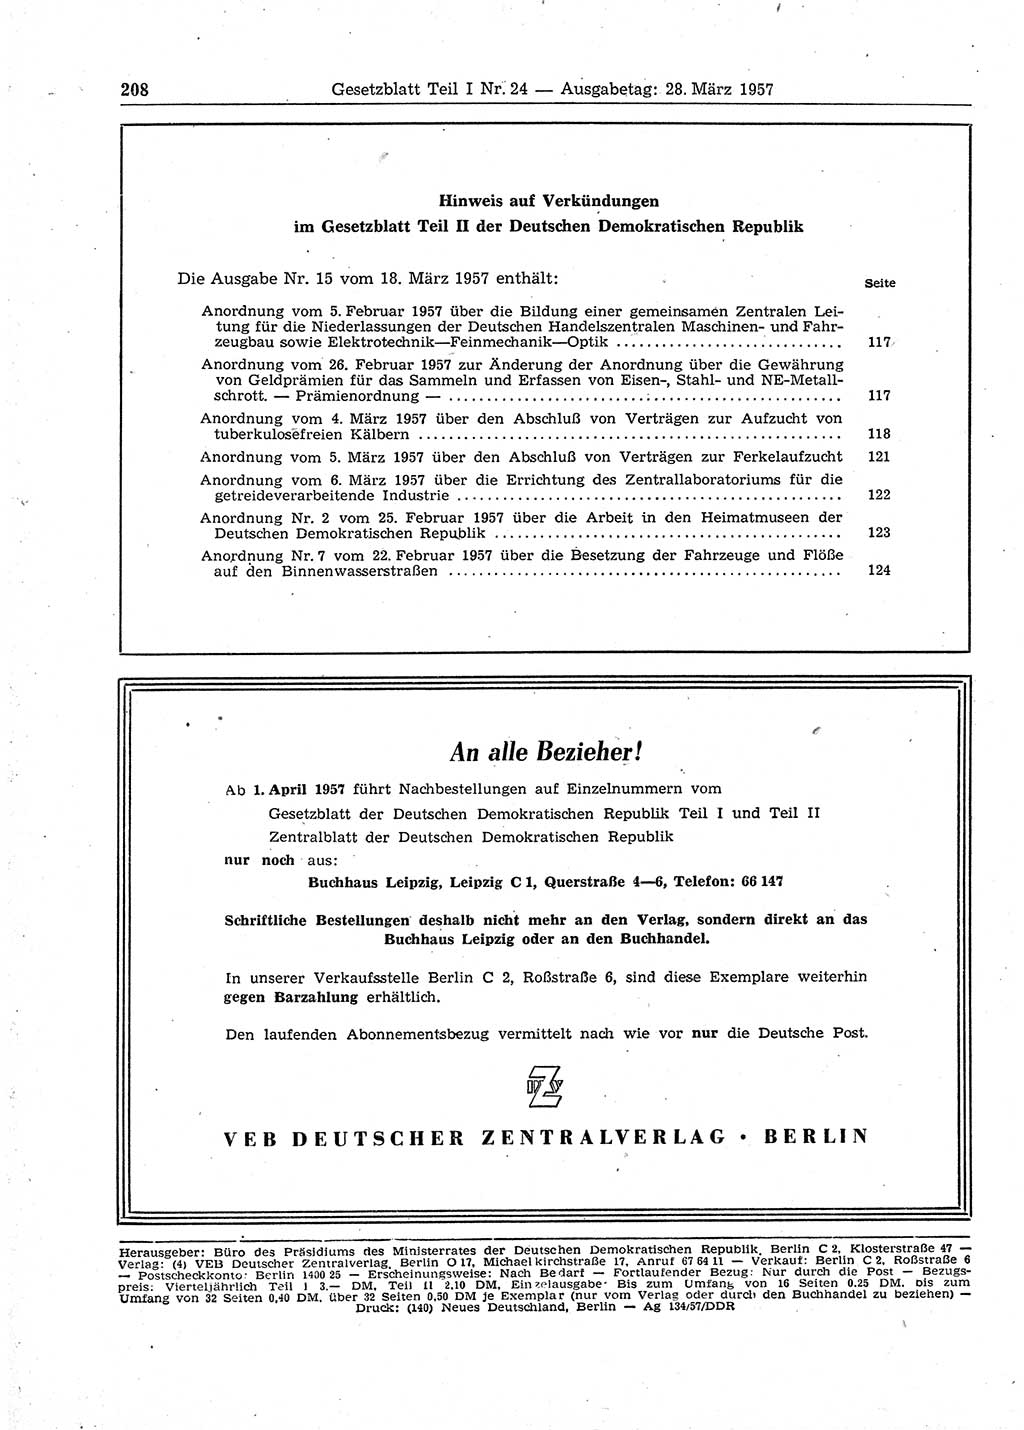 Gesetzblatt (GBl.) der Deutschen Demokratischen Republik (DDR) Teil Ⅰ 1957, Seite 208 (GBl. DDR Ⅰ 1957, S. 208)